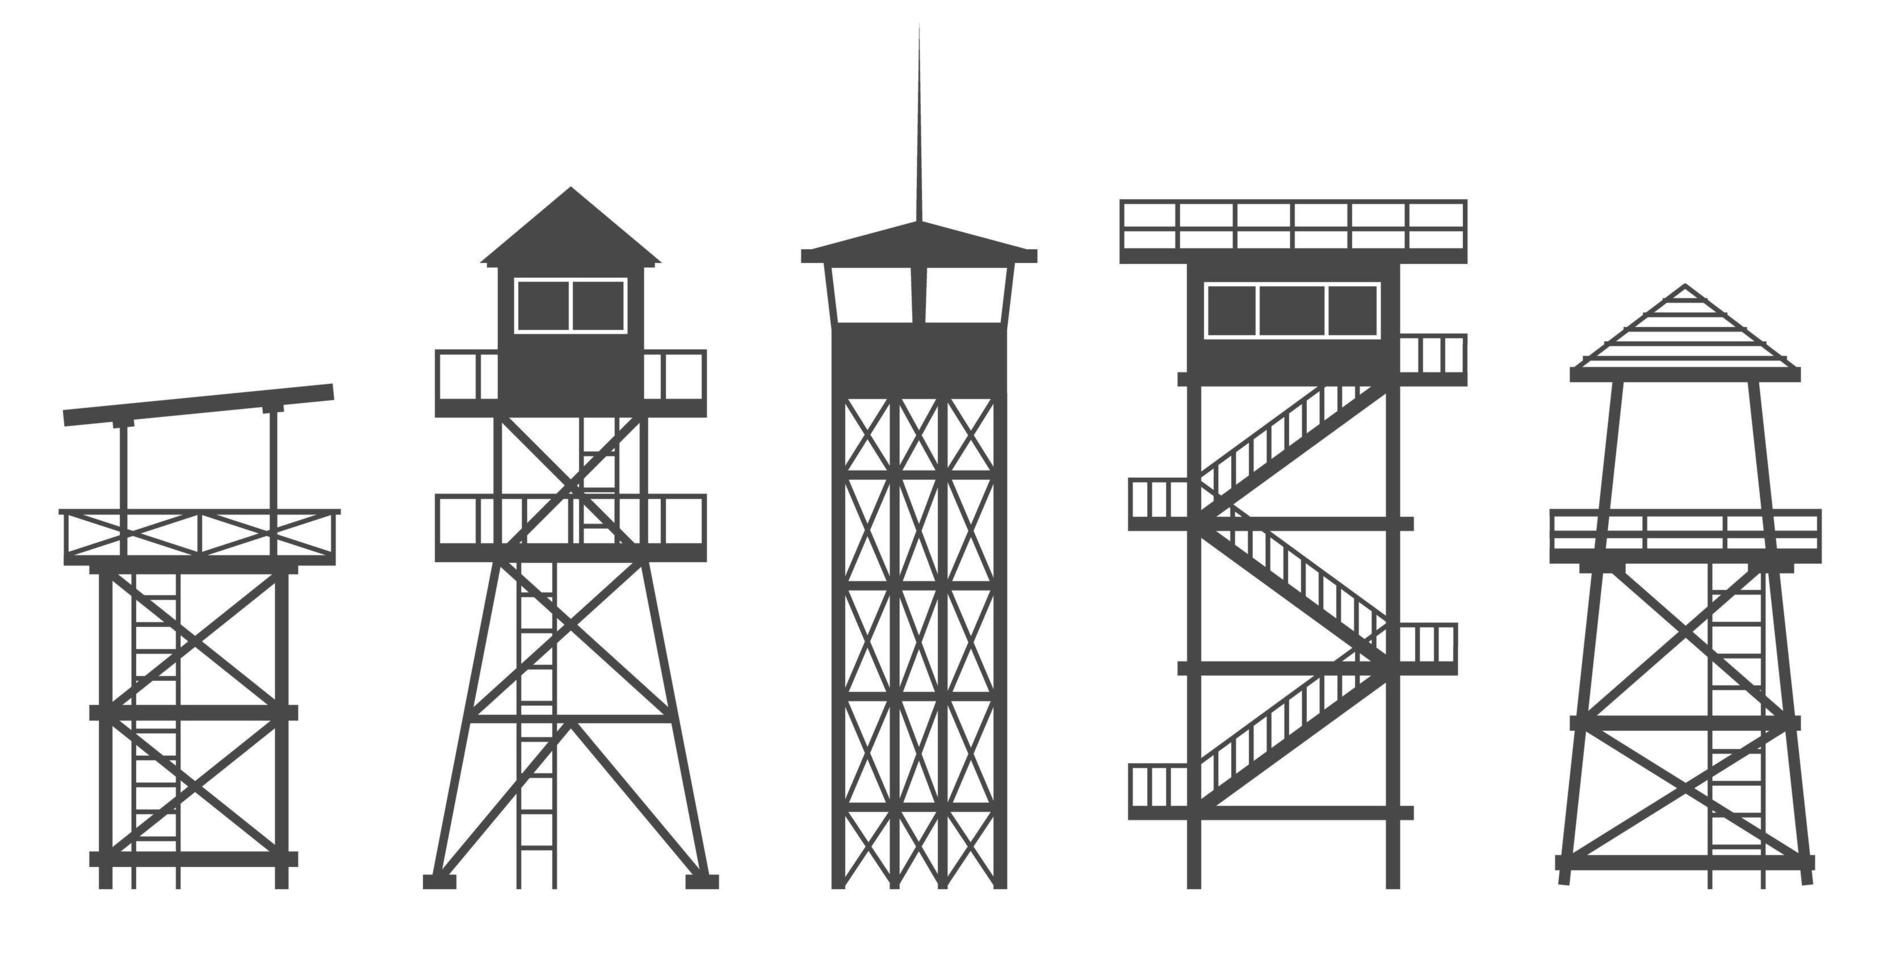 torre di osservazione in prigione, esercito e per la caccia al safari. illustrazione vettoriale della siluetta dell'accampamento militare.